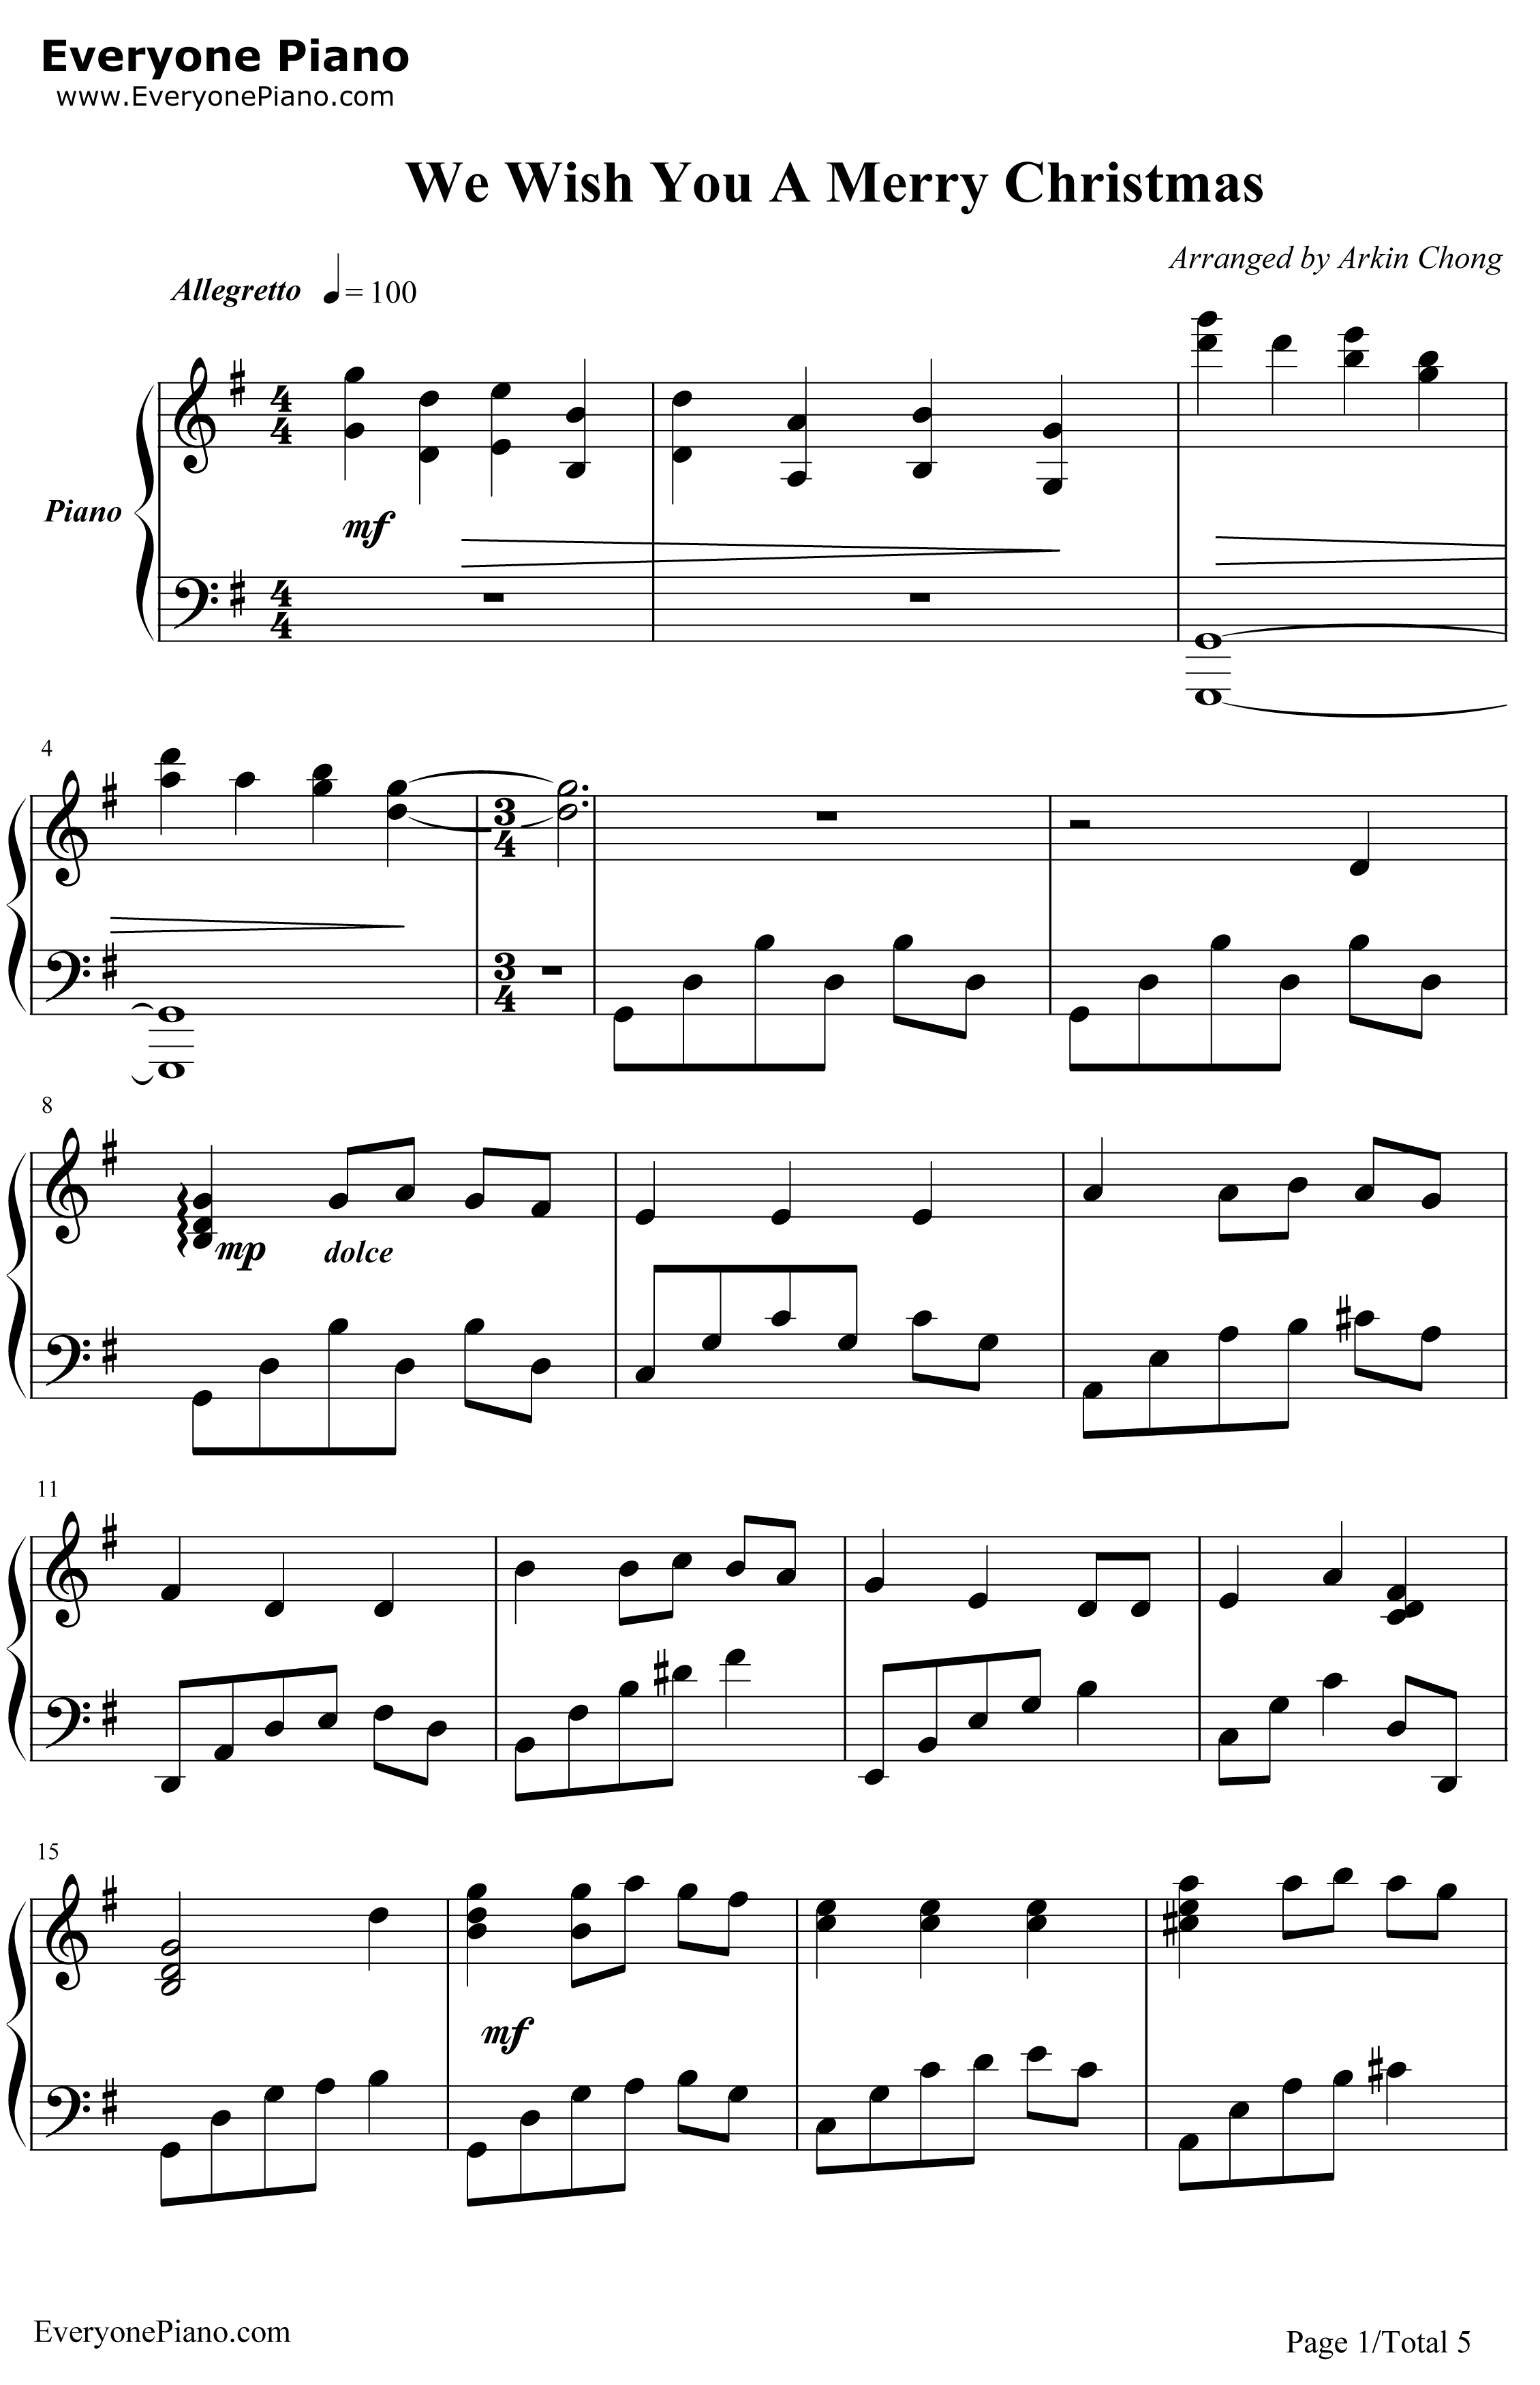 圣诞歌曲钢琴谱-英国童声合唱团-WeWishYouAMerryChristmas1